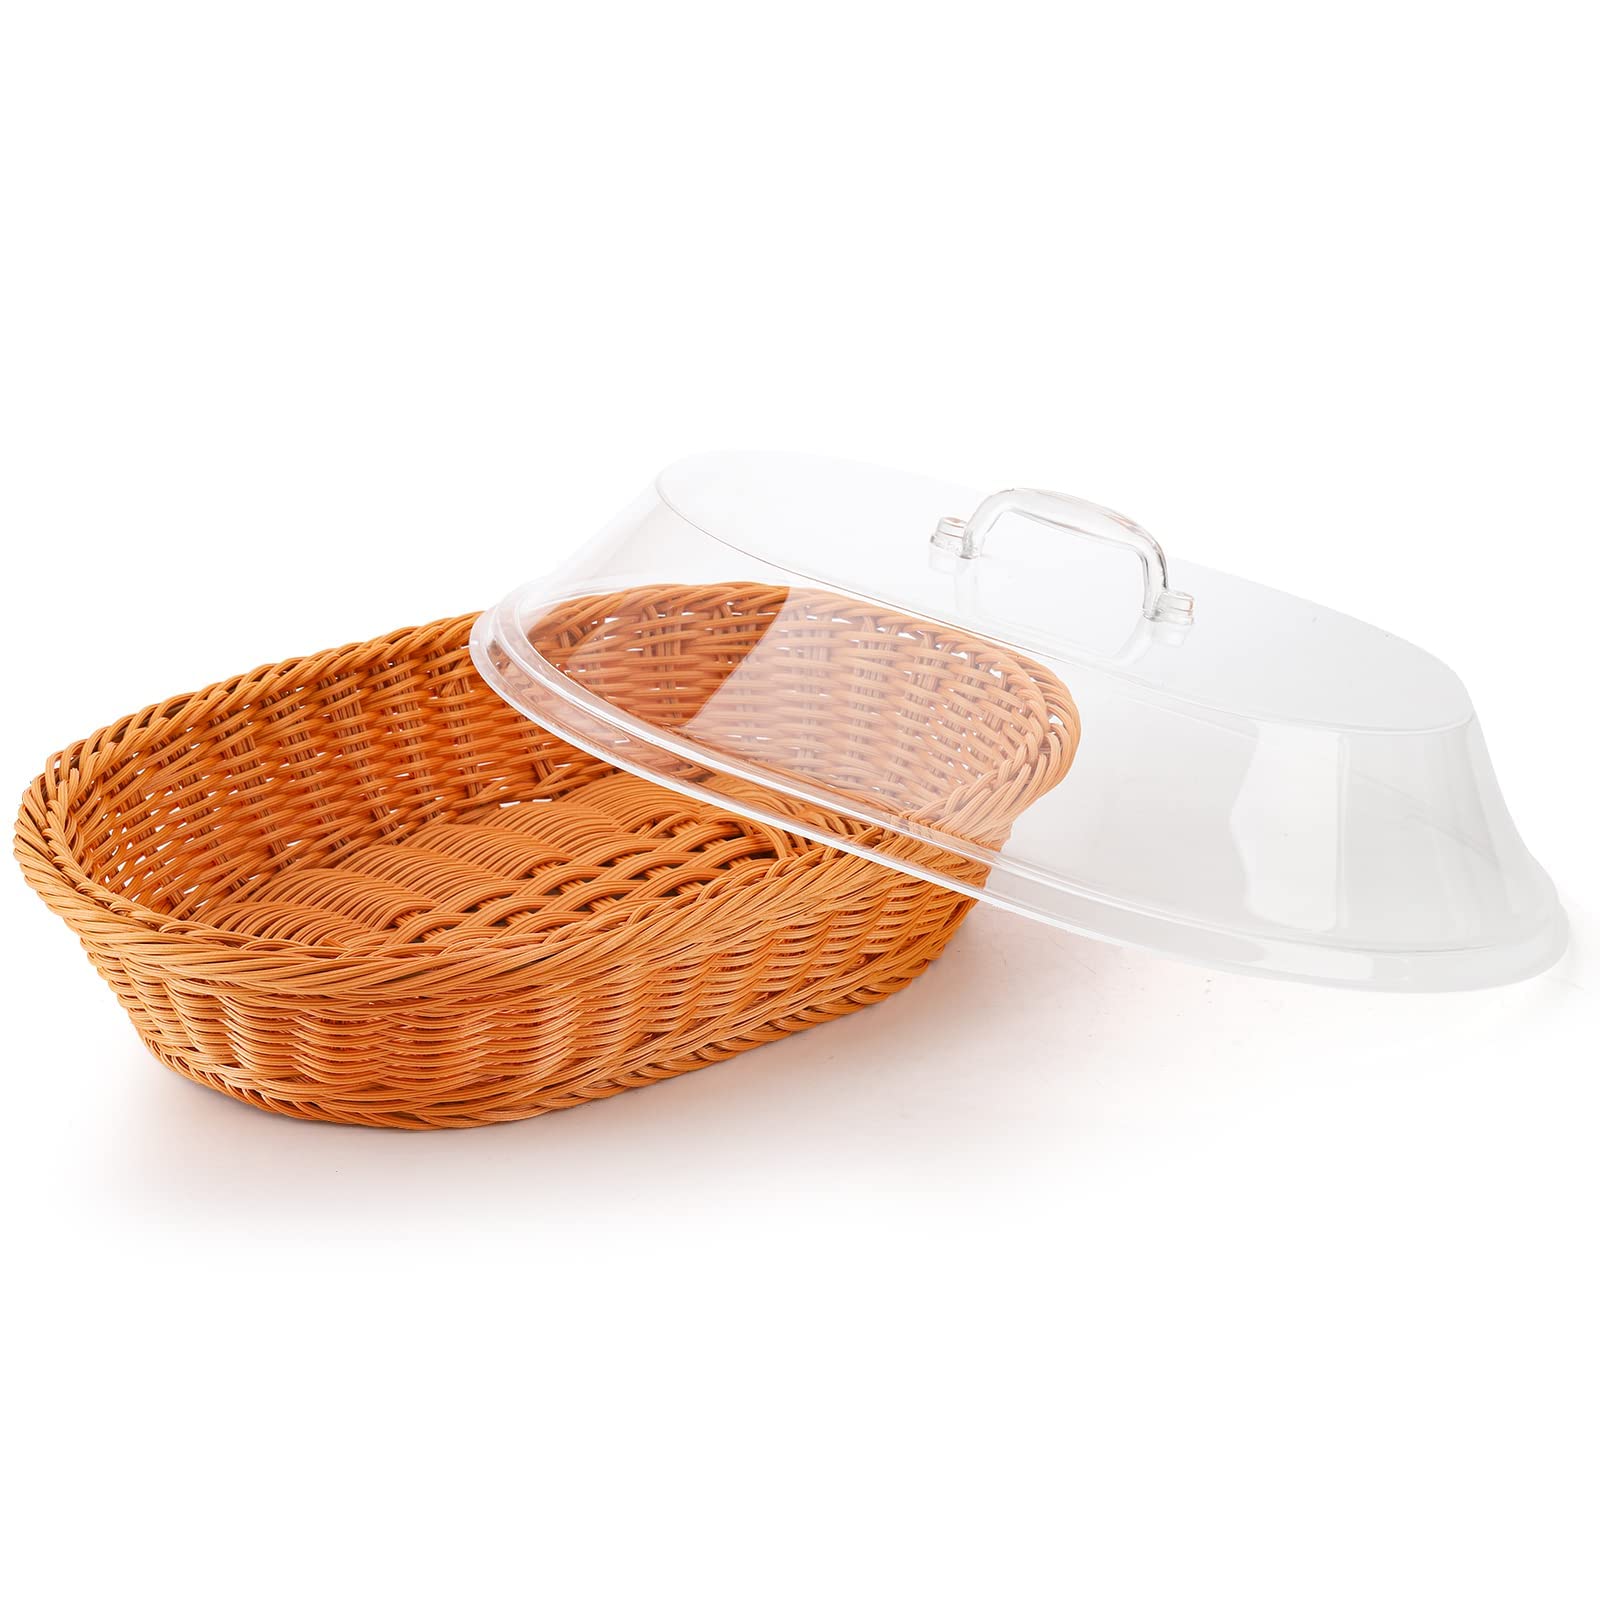 Peohud 13.4'' Imitation Rattan Bread Basket with Acrylic Lid, Natural Oval Wicker Loaf Bread Basket, Woven Food Fruit Vegetables Serving Basket for Tabletop, Restaurant